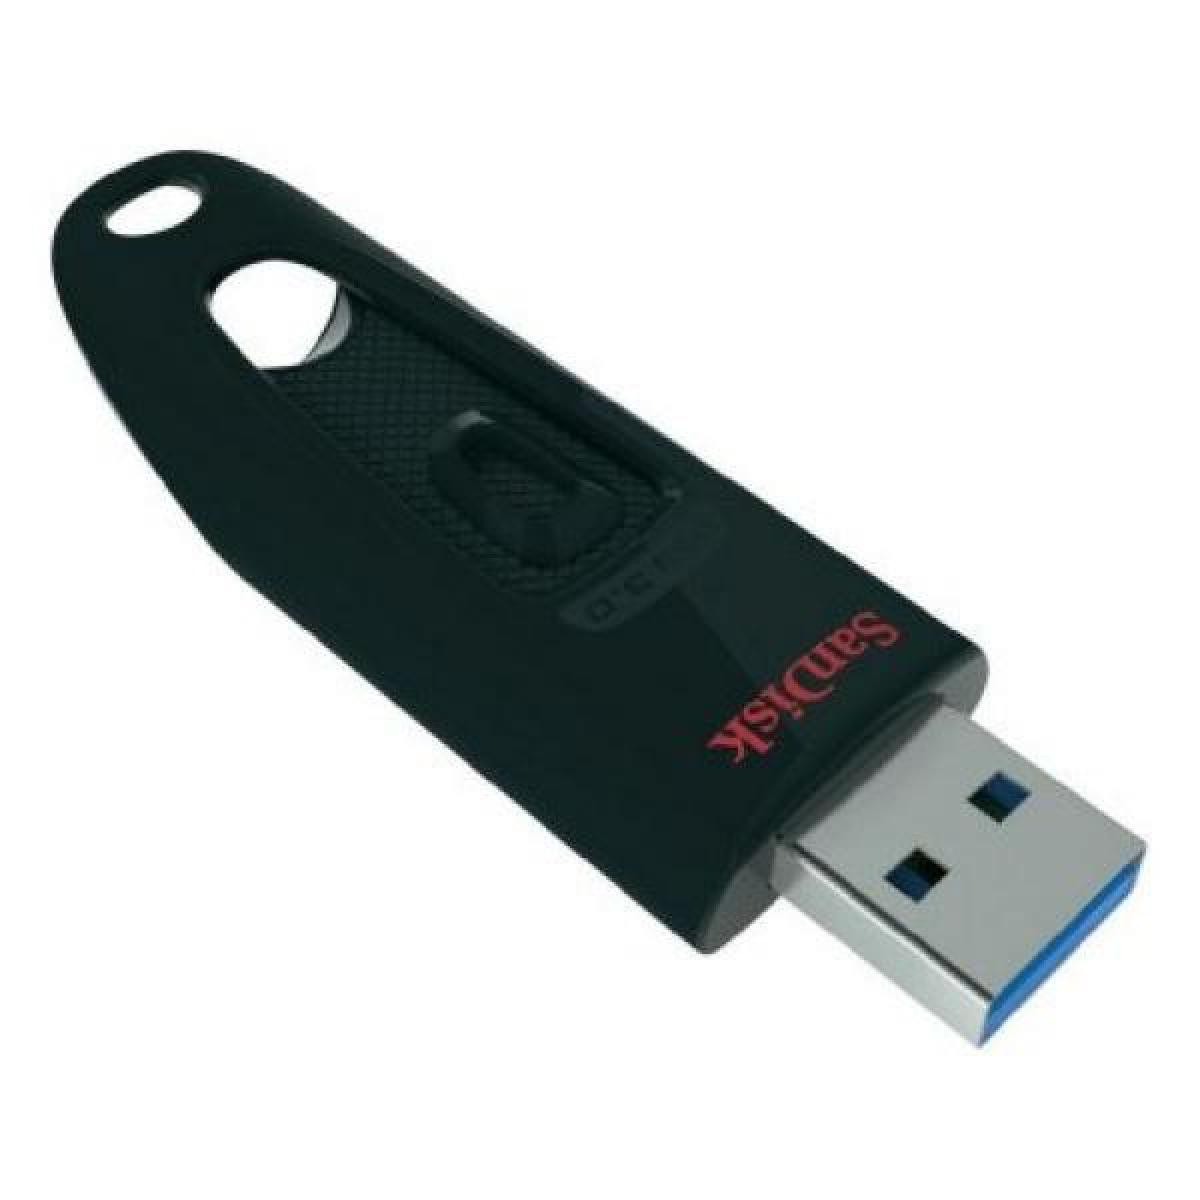 Totalcadeau - Clé USB 3.0 32 Go Capacité - 32 GB - Clés USB